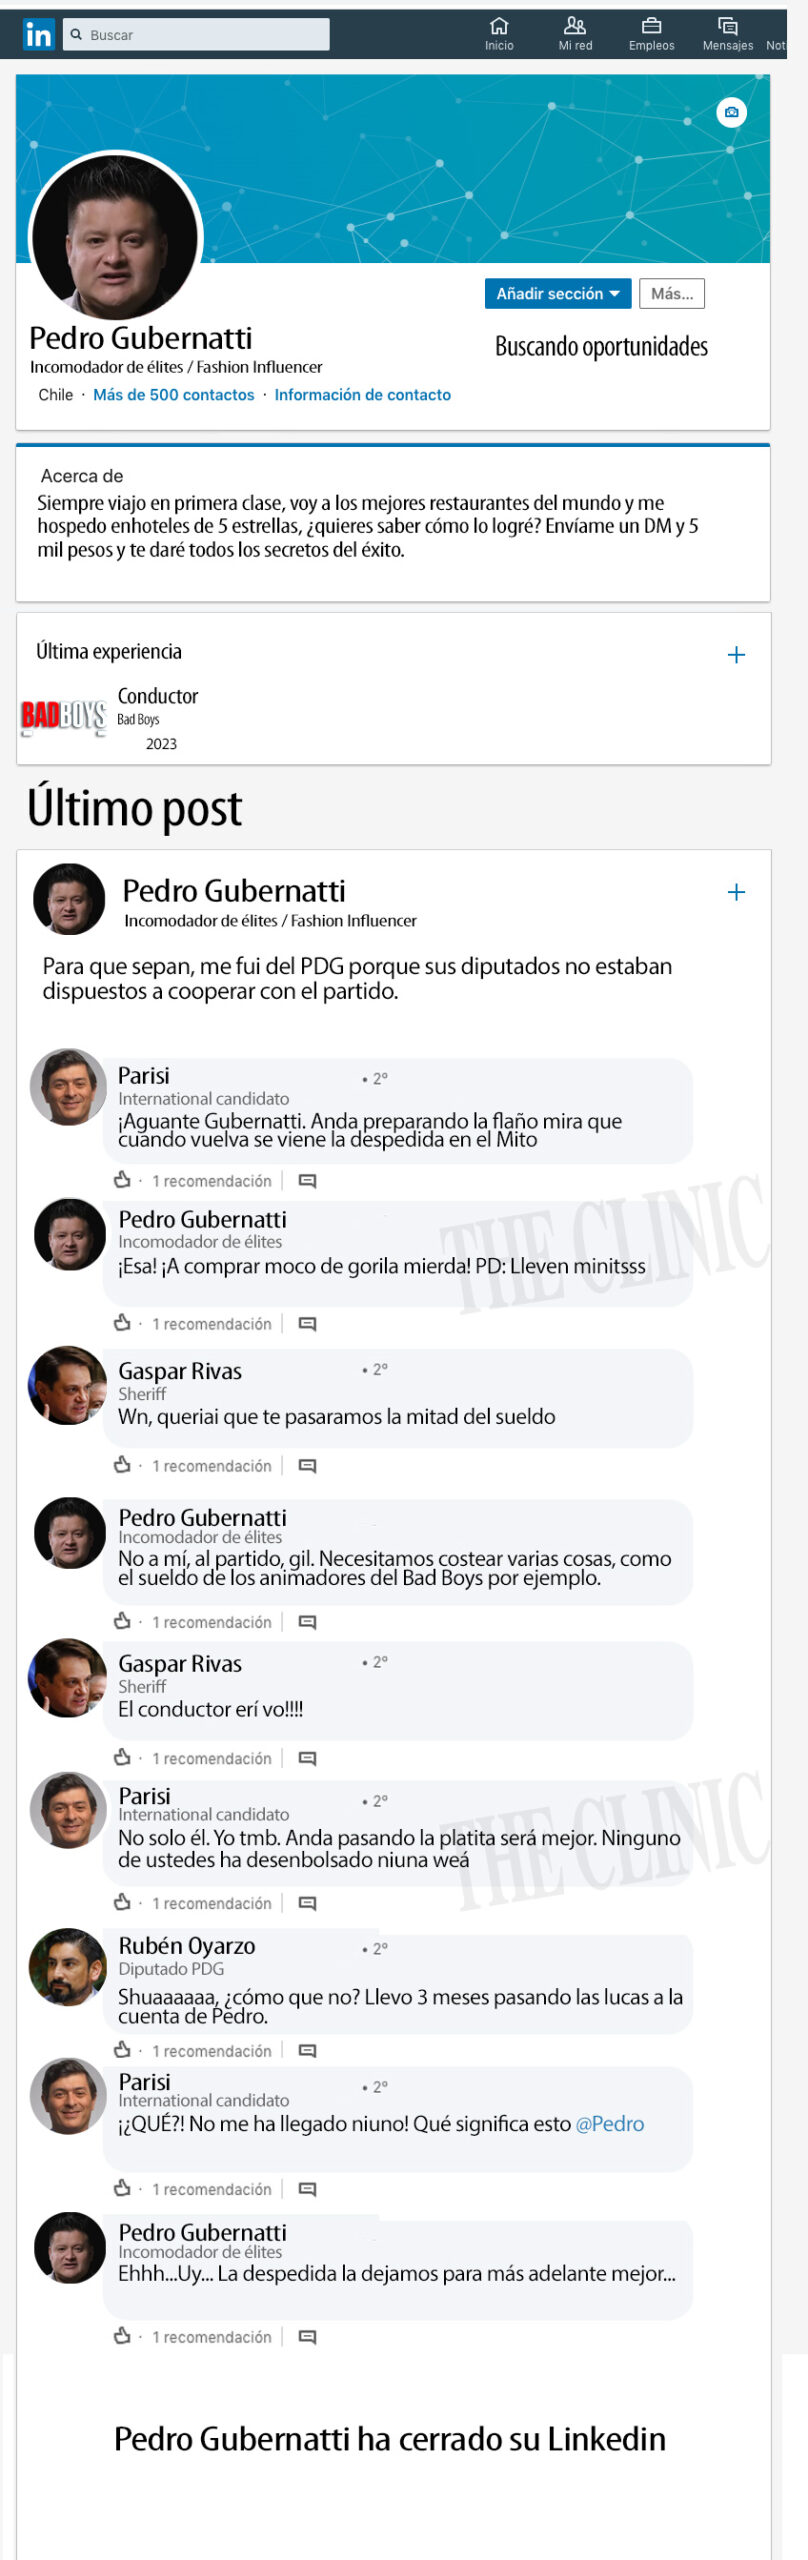 HUMOR. El Linkedin de Pedro Gubernatti